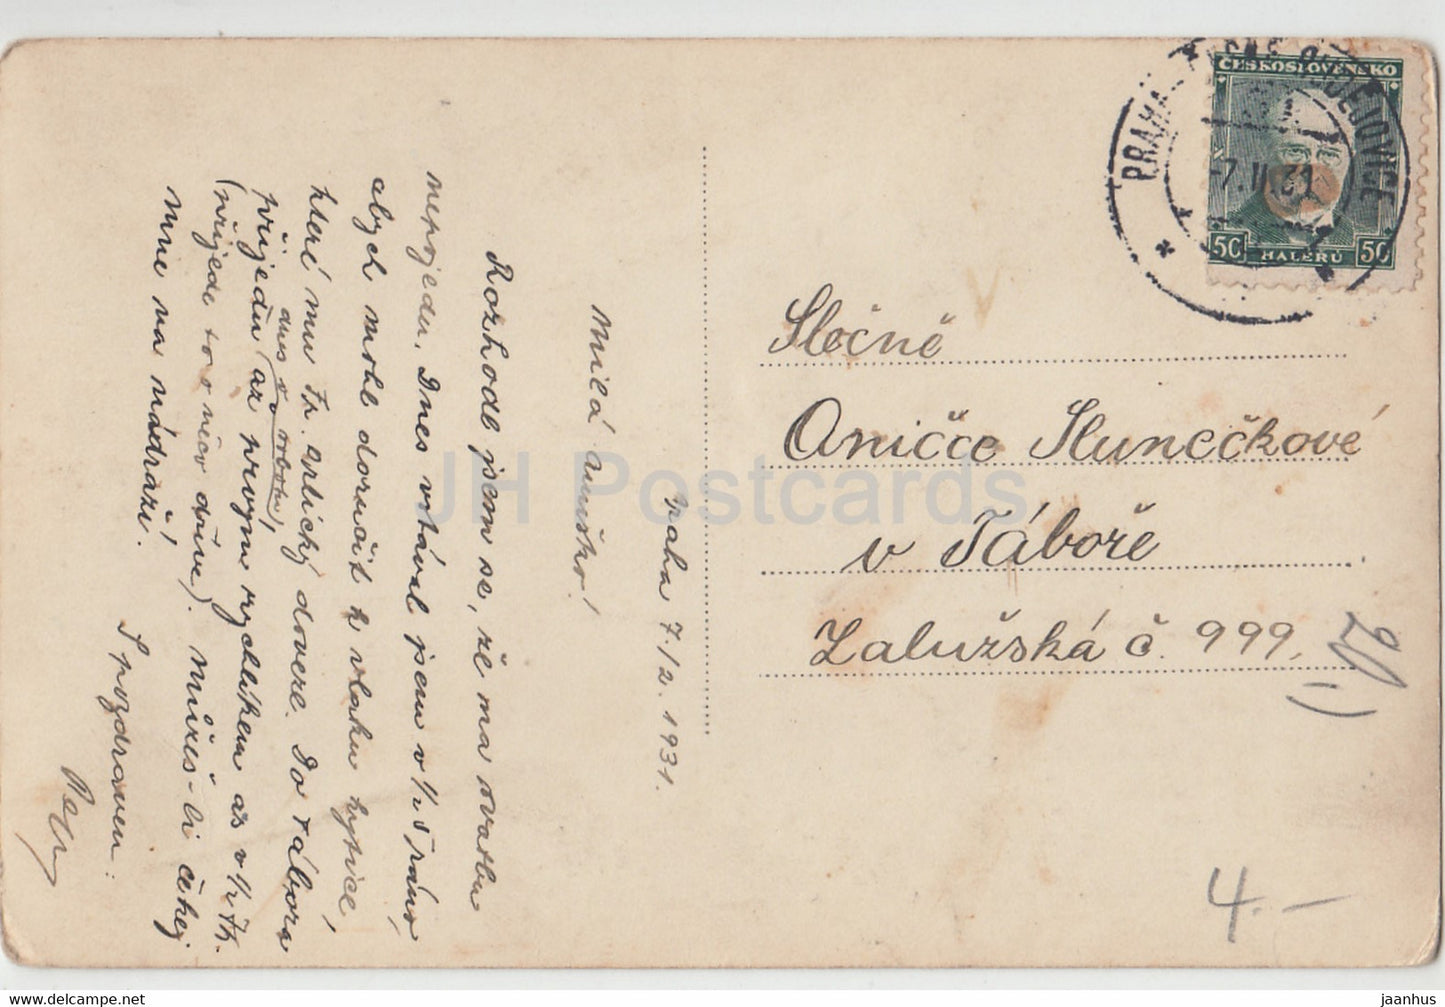 Praha - Prague - U Krizovniku - Monastère des Croisés - VKKV - 12 - carte postale ancienne - 1931 - République tchèque - utilisé